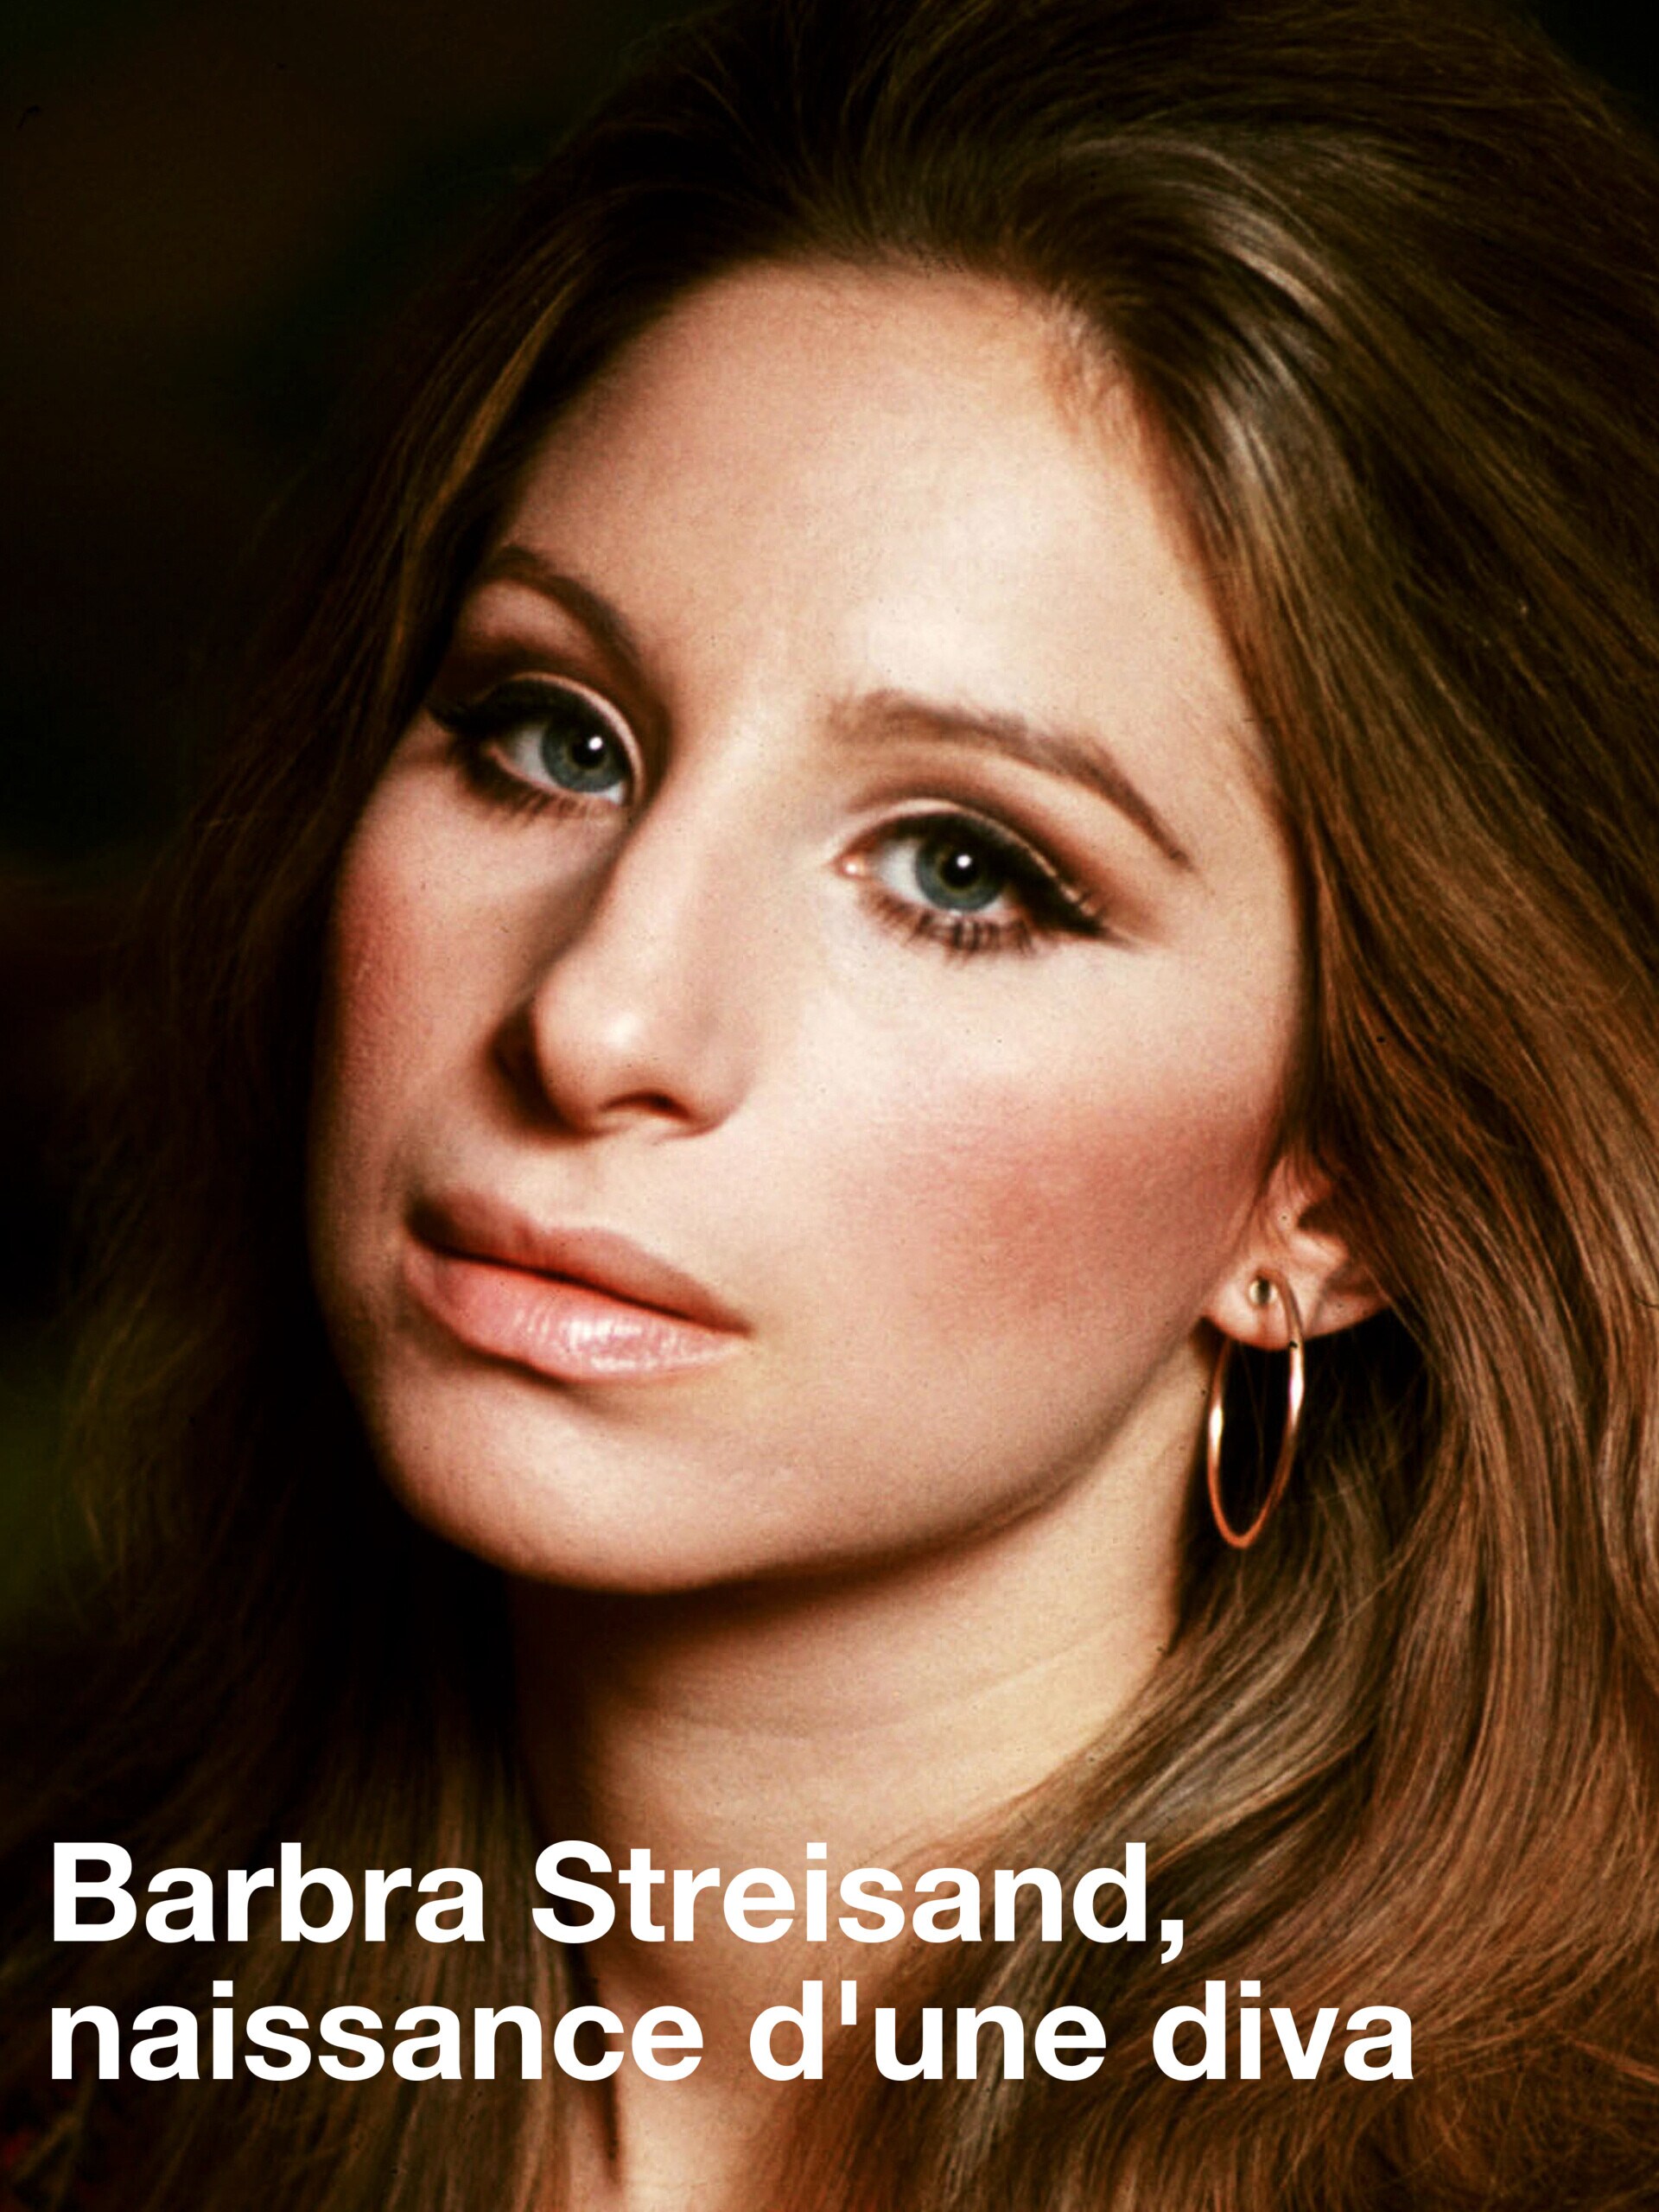 Barbra Streisand, naissance d'une diva